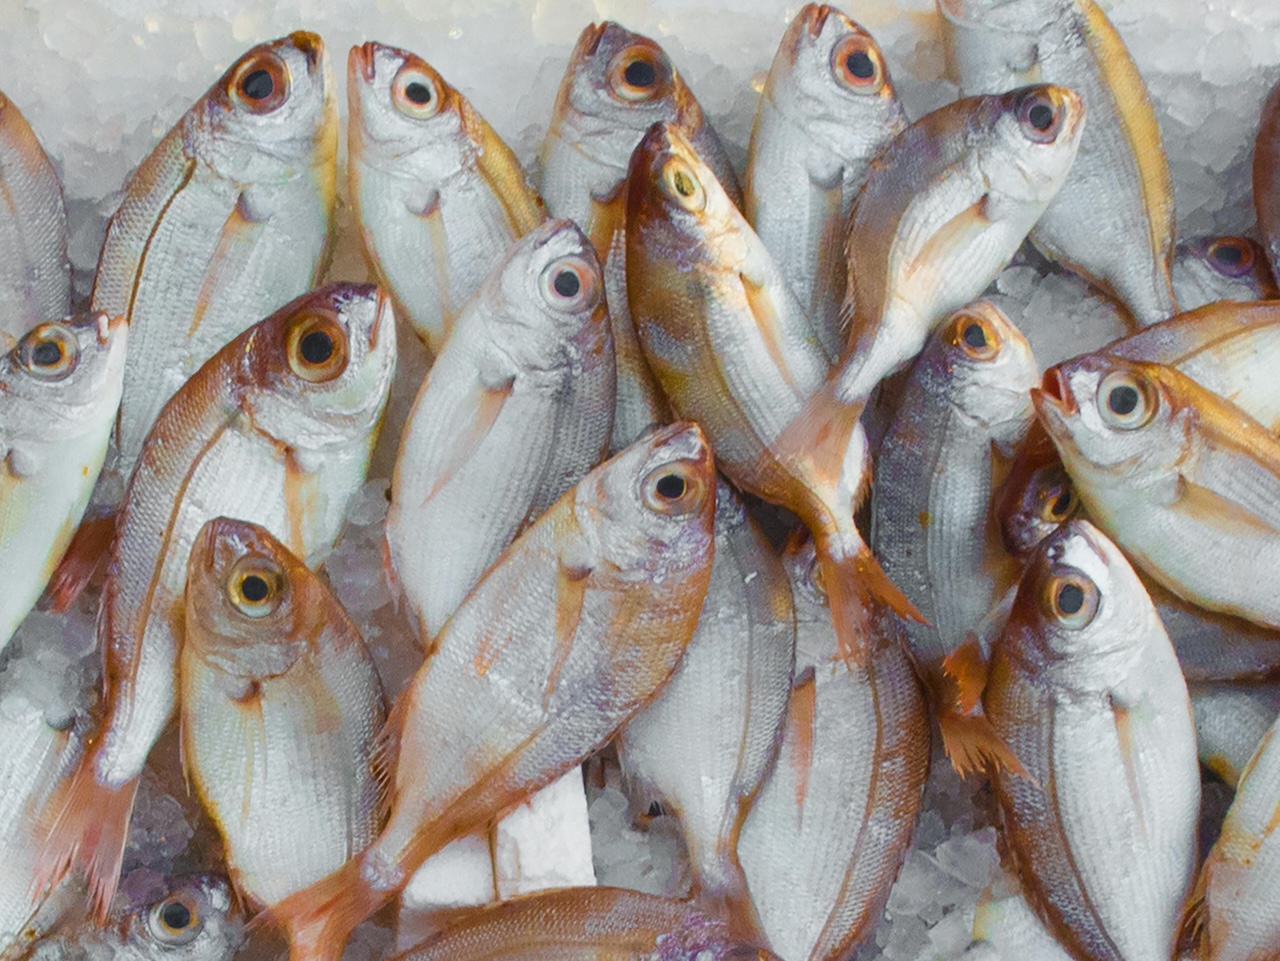 Controlli alimentari a Palermo, sequestro di pesce e mangimi per animali: sanzioni salatissime